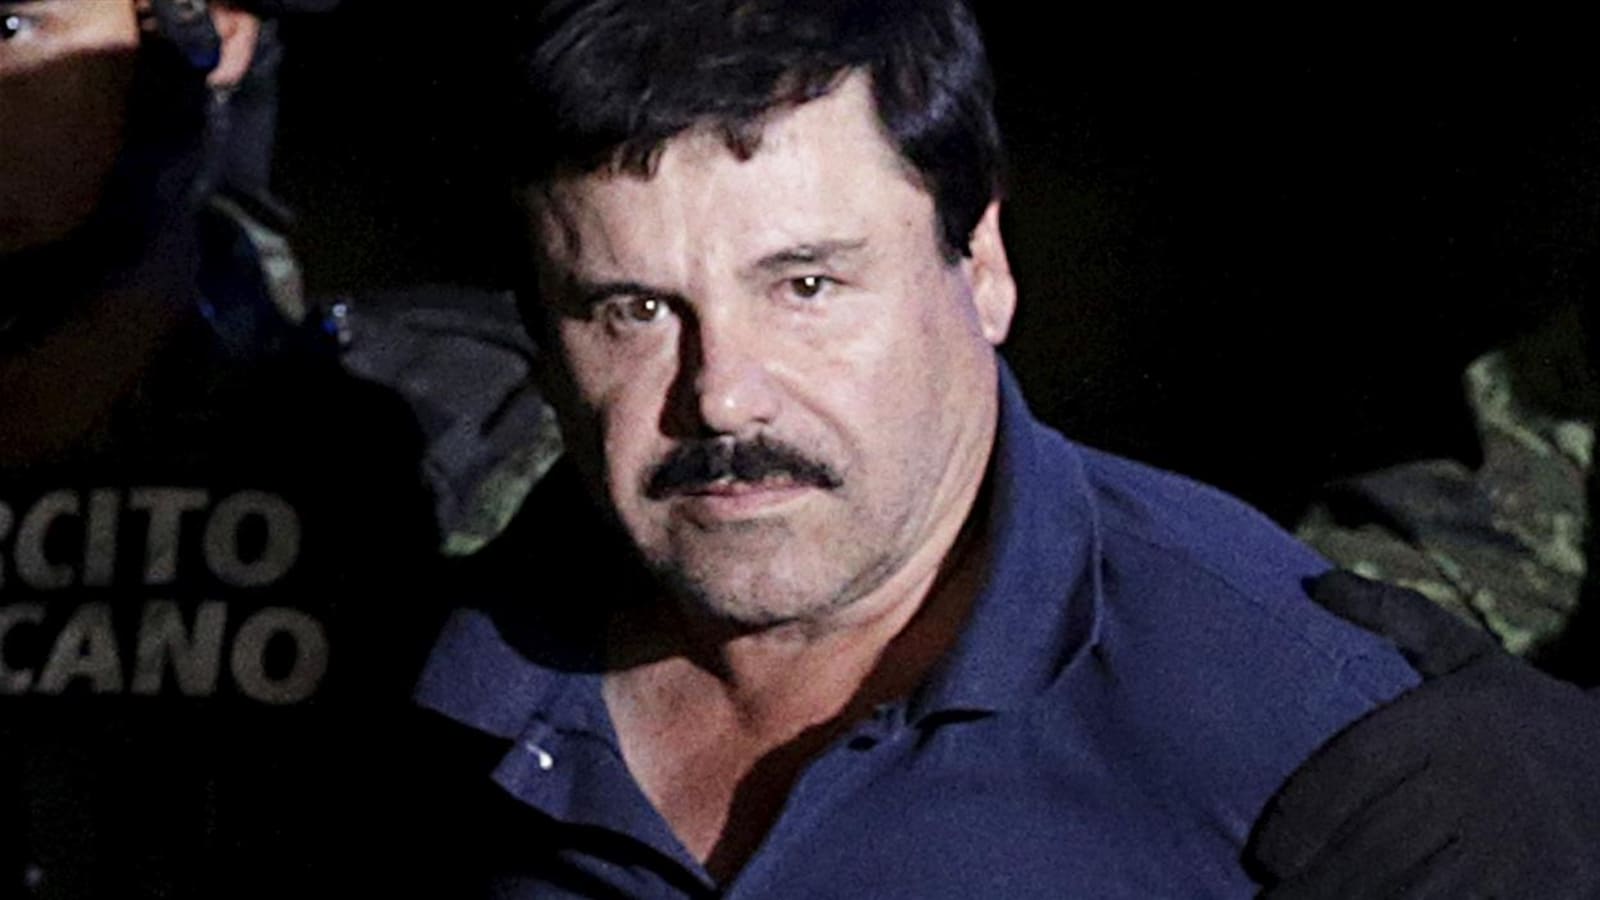 Le narcotrafiquant "El Chapo" condamné à la prison à vie aux USA